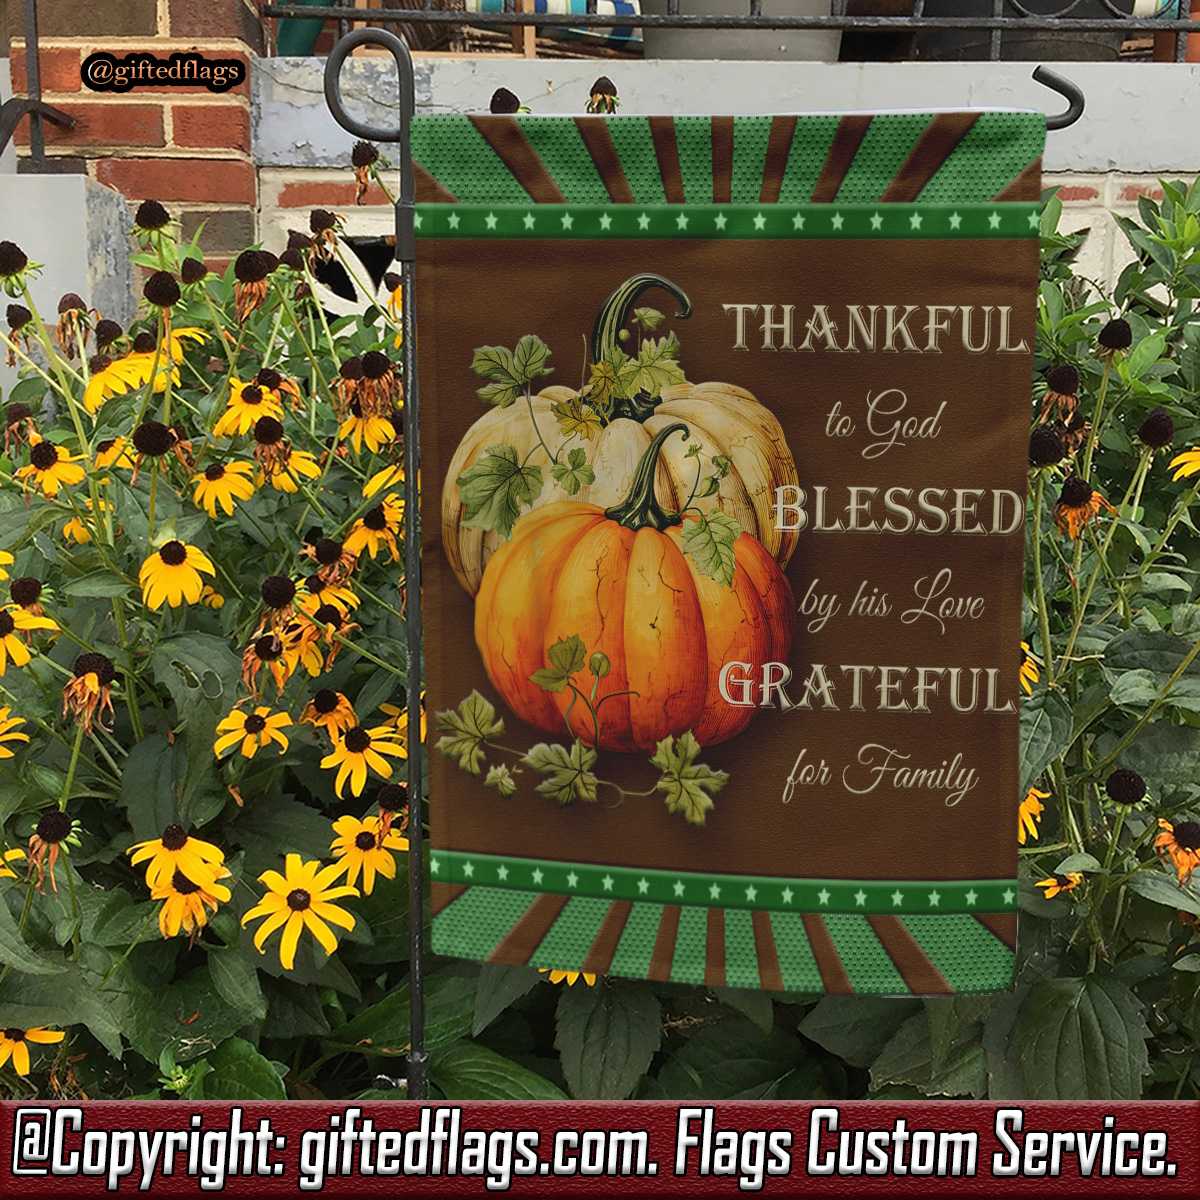 Thankful Grateful Blessed Christian Thanksgiving Garden Flag, House Flag